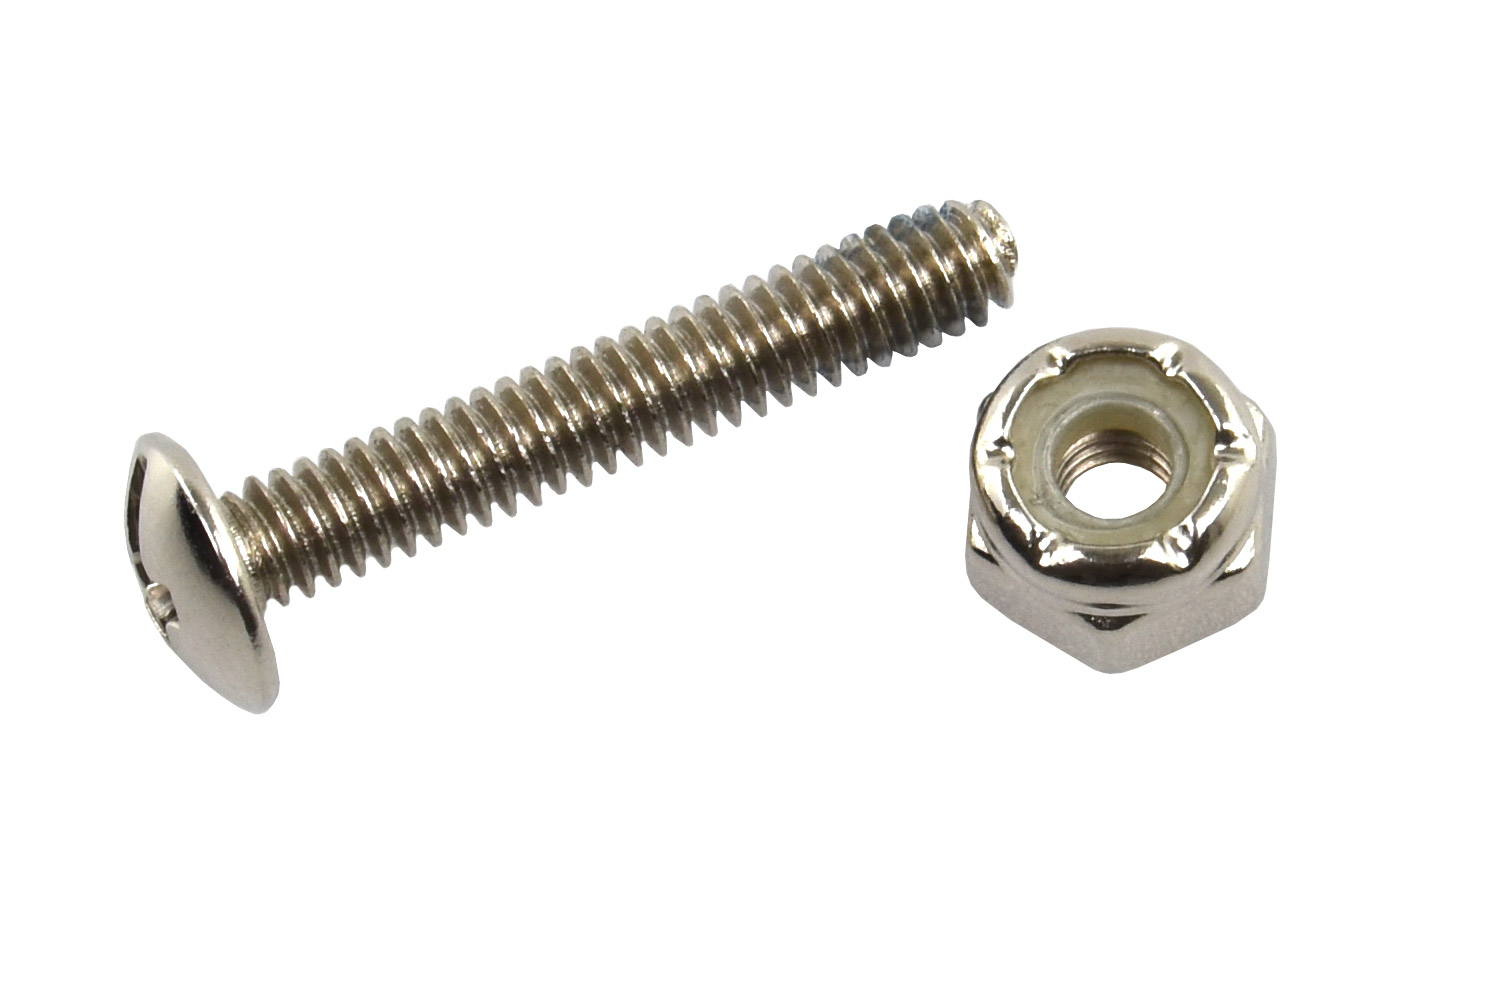 Universal kicker screw for 16mm kicker rod (22 pcs., incl. nuts)